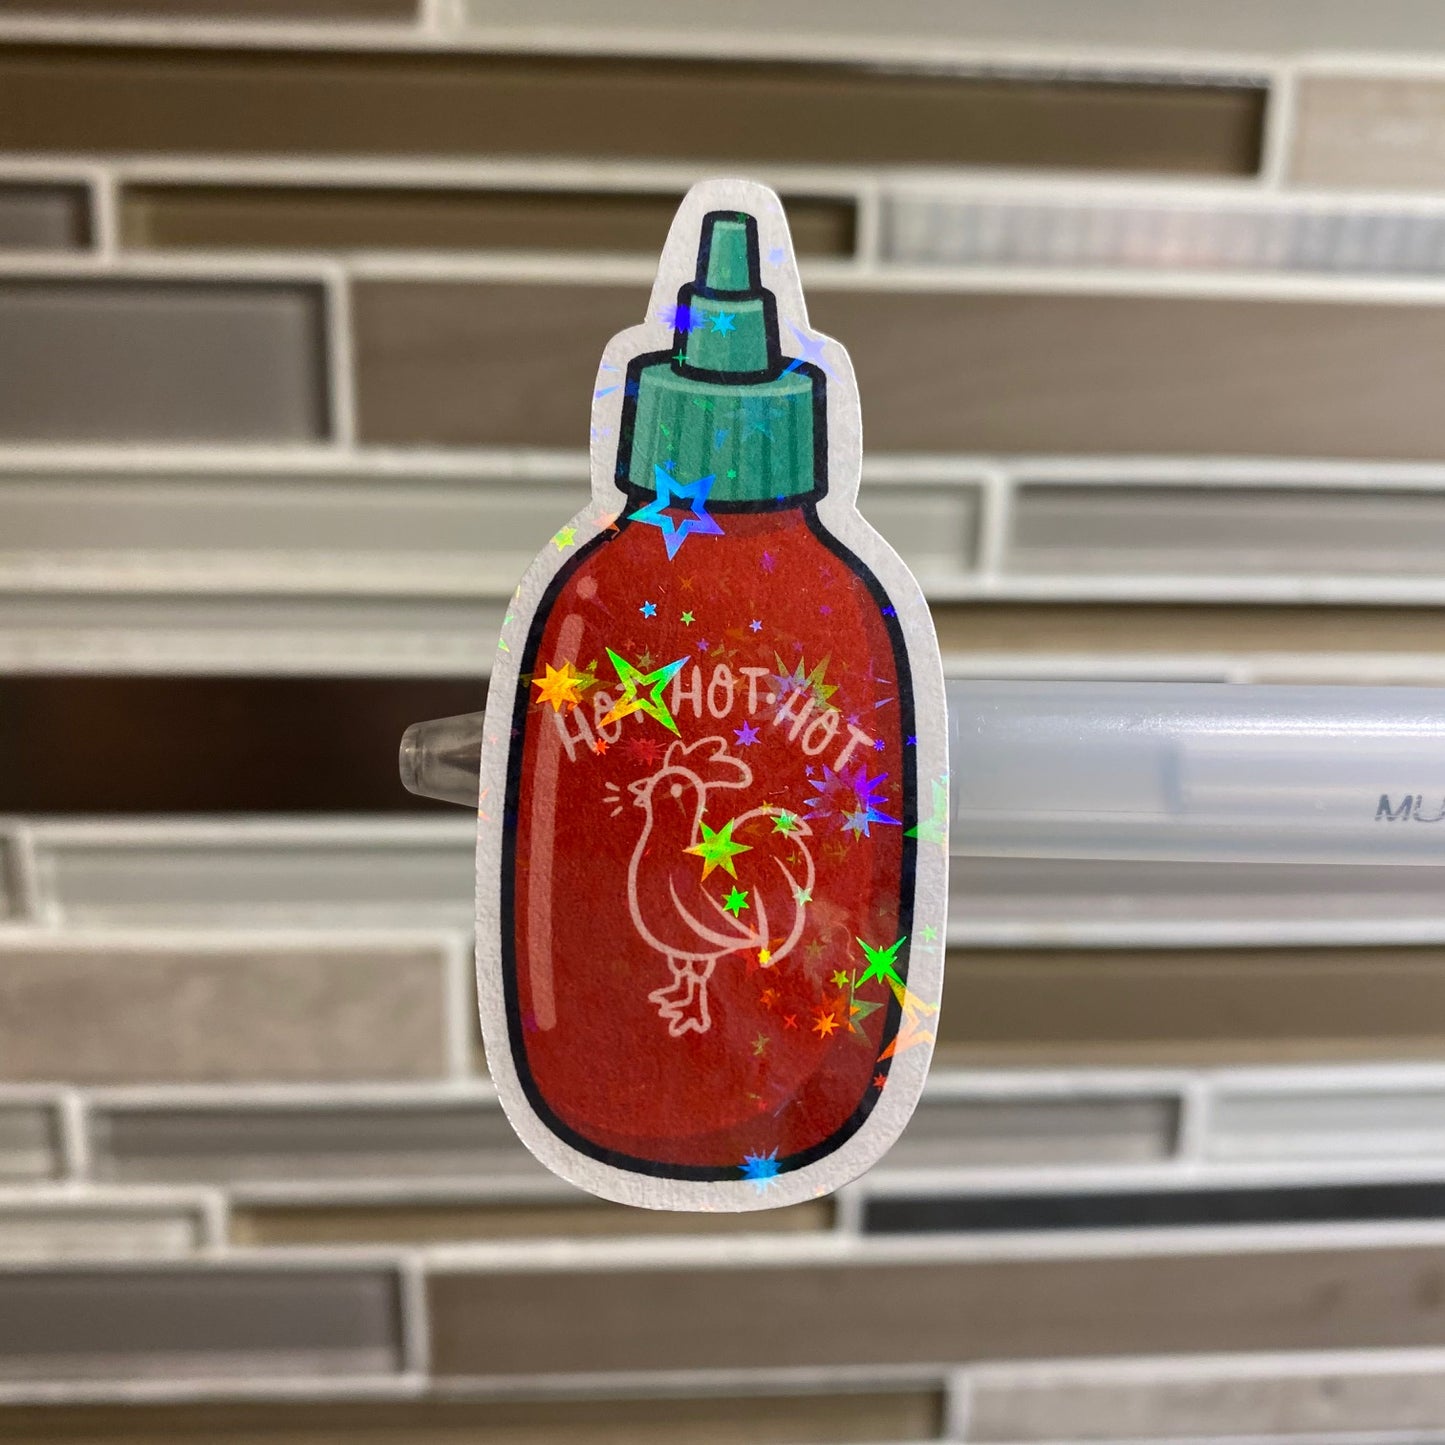 Star Holographic Popular Hot Sauce Die Cut Sticker